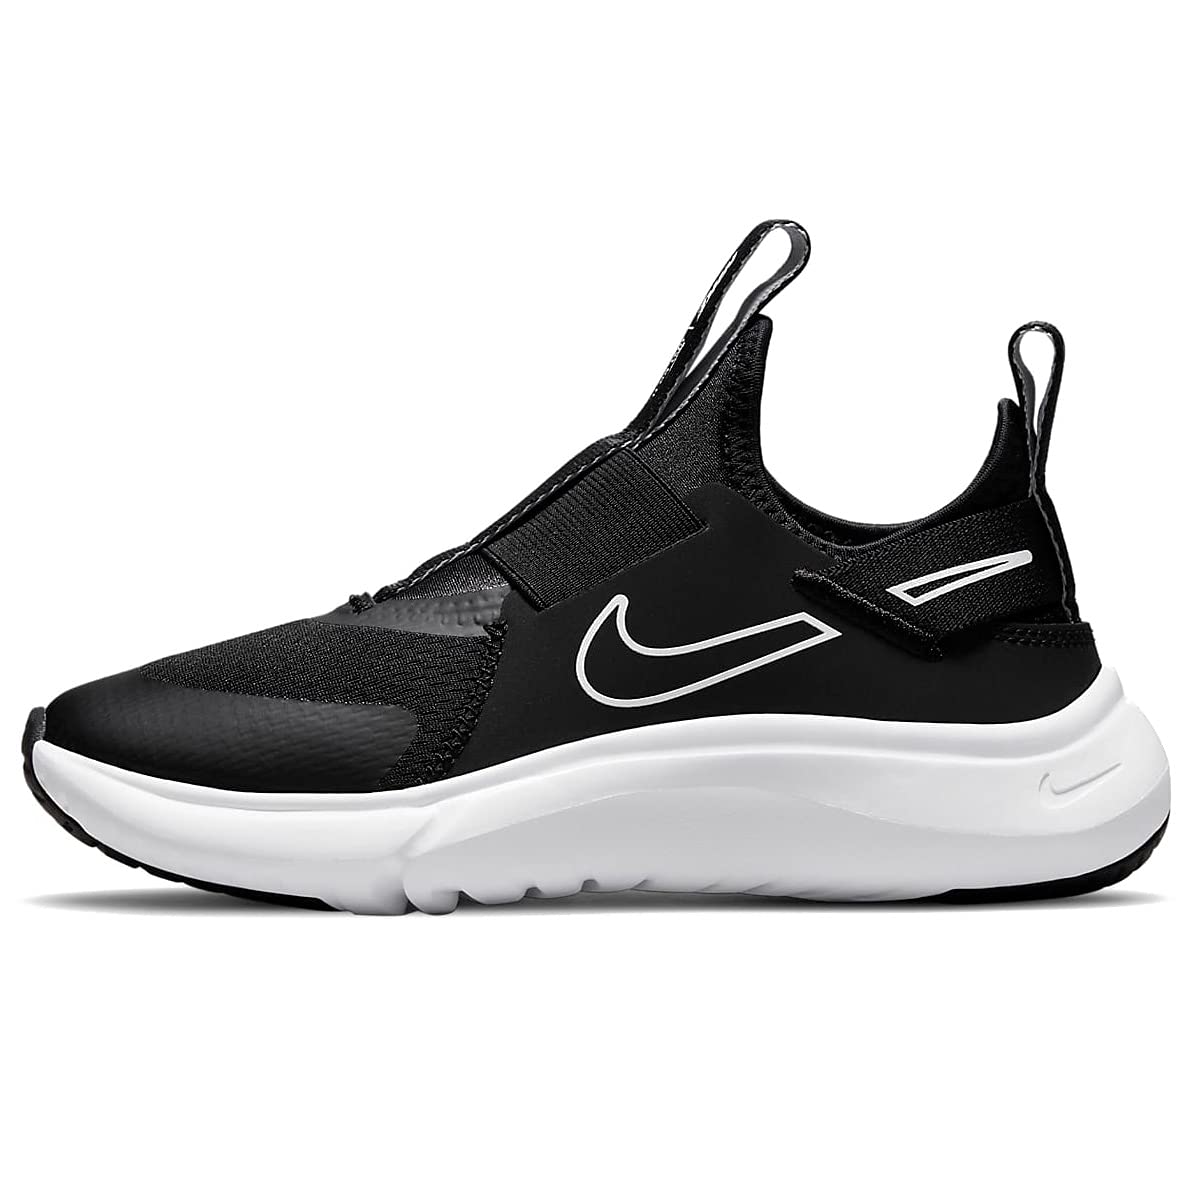 Nike Unisex-Child Running Shoes